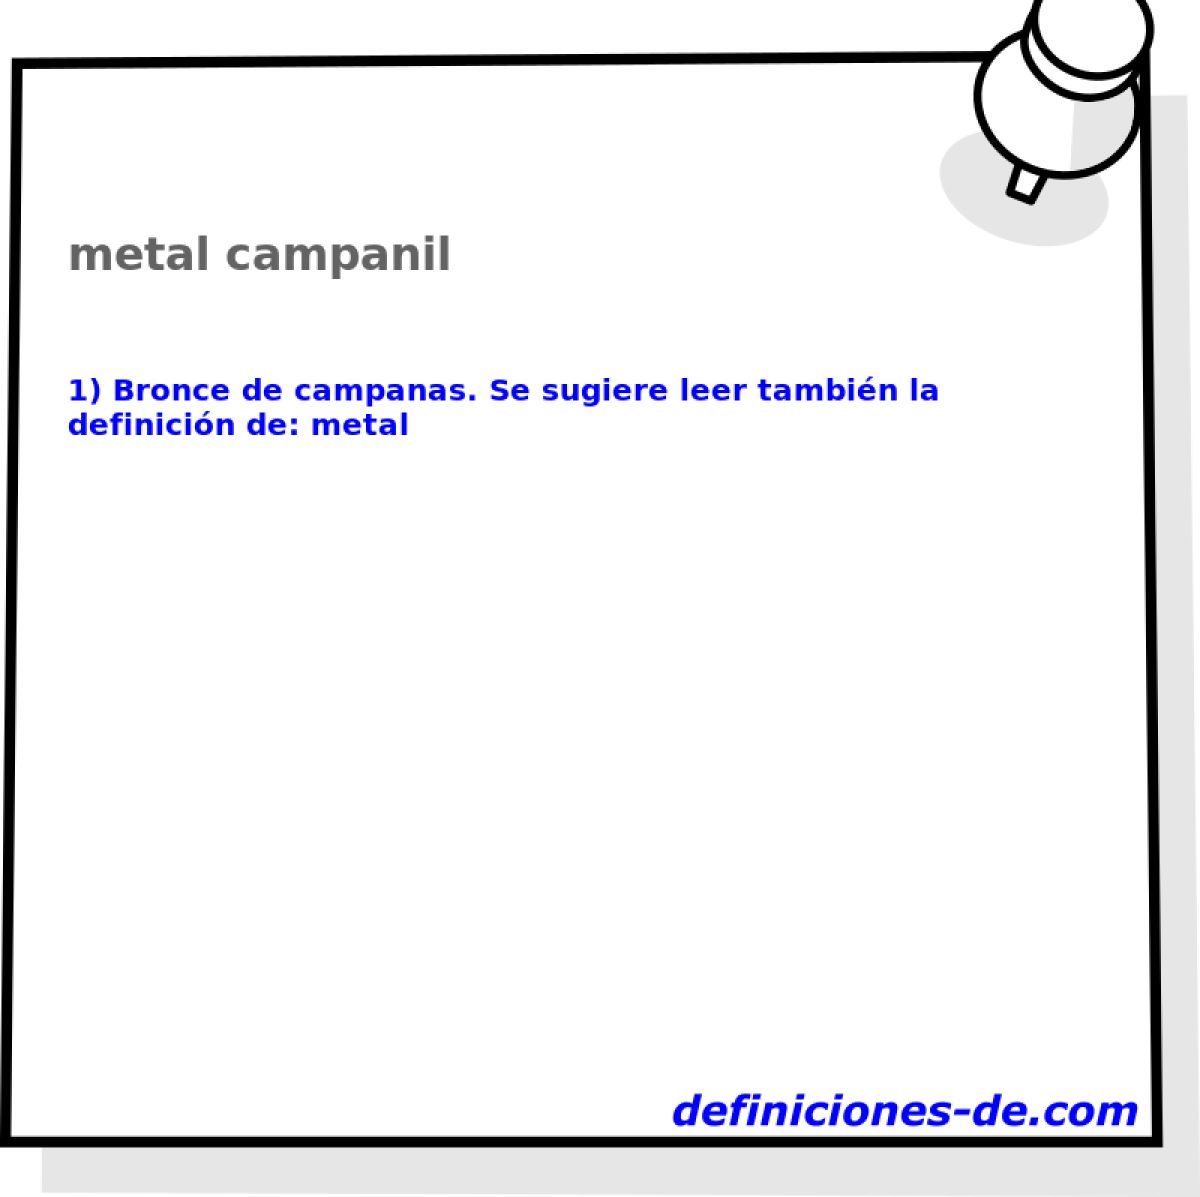 metal campanil 